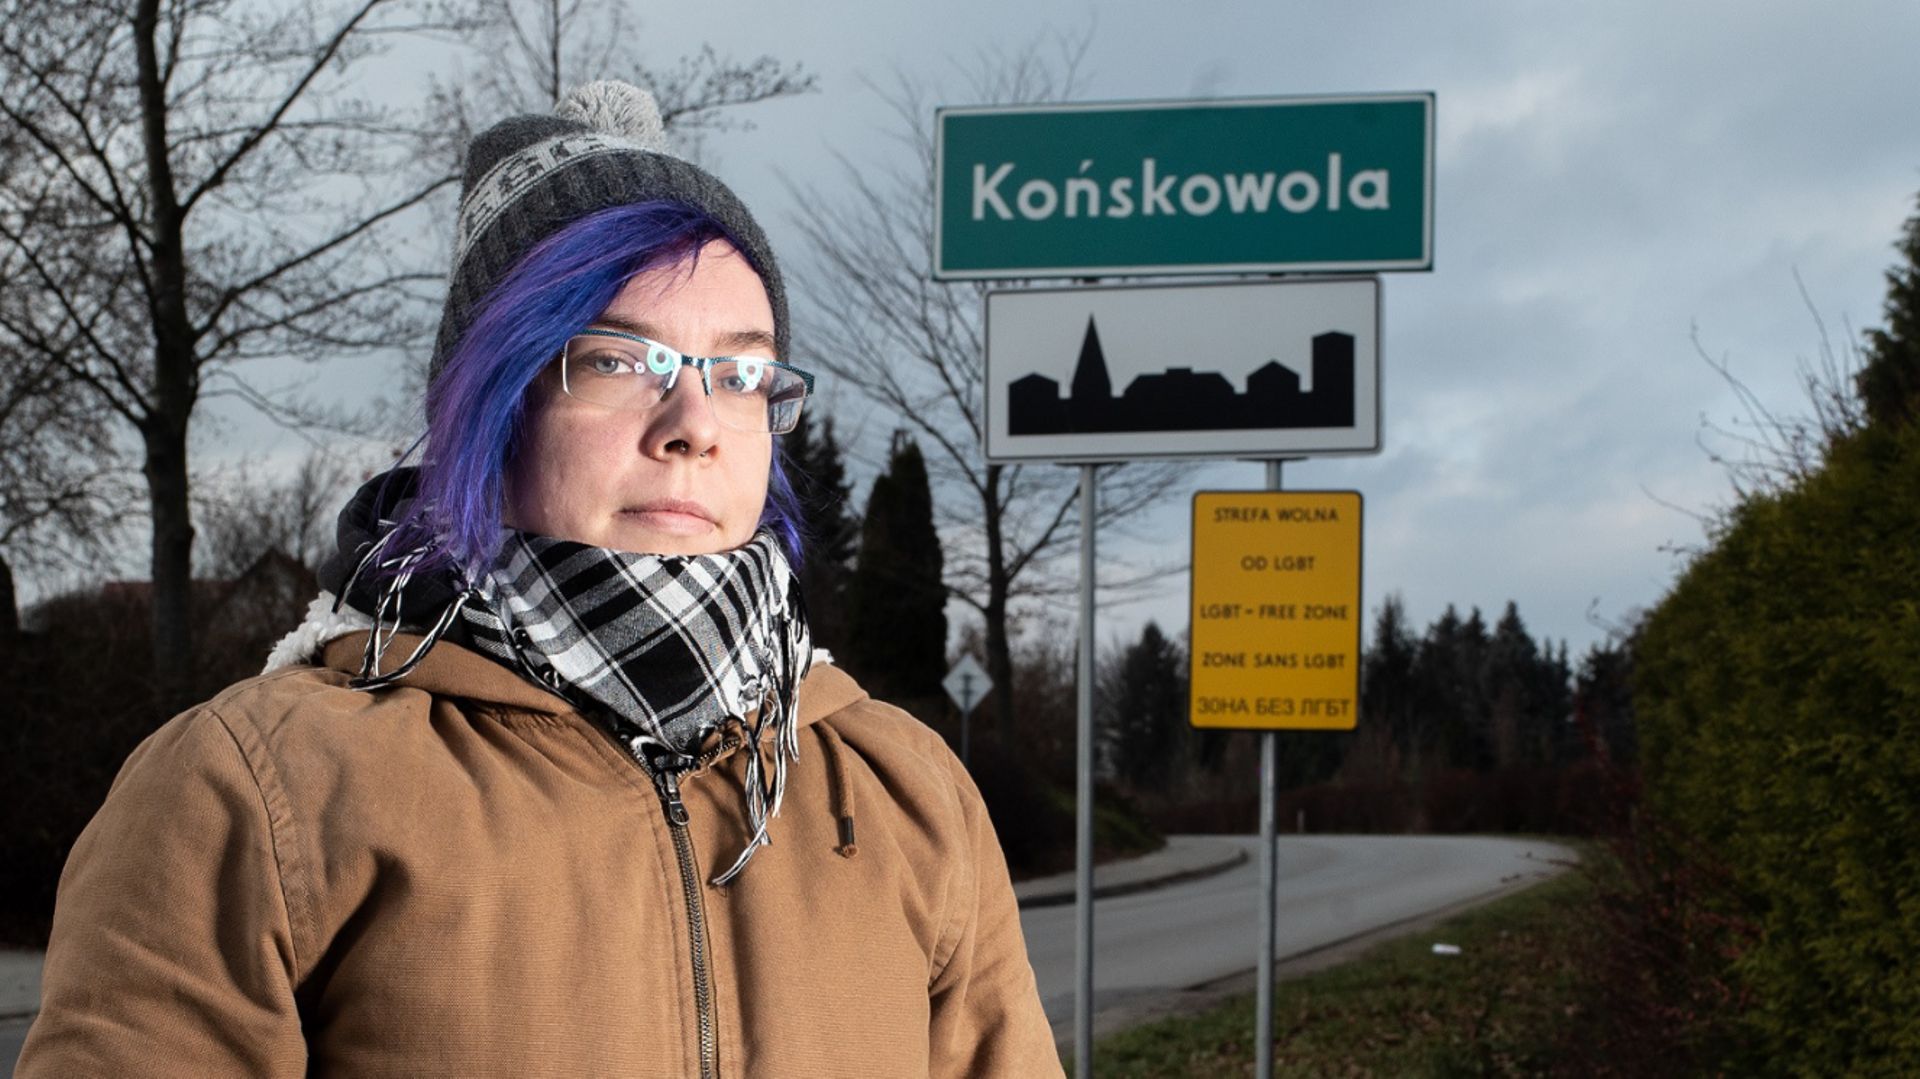 Bart Staszewski, le photographe activiste qui documente les villages polonais se déclarant "zone sans LGBT"